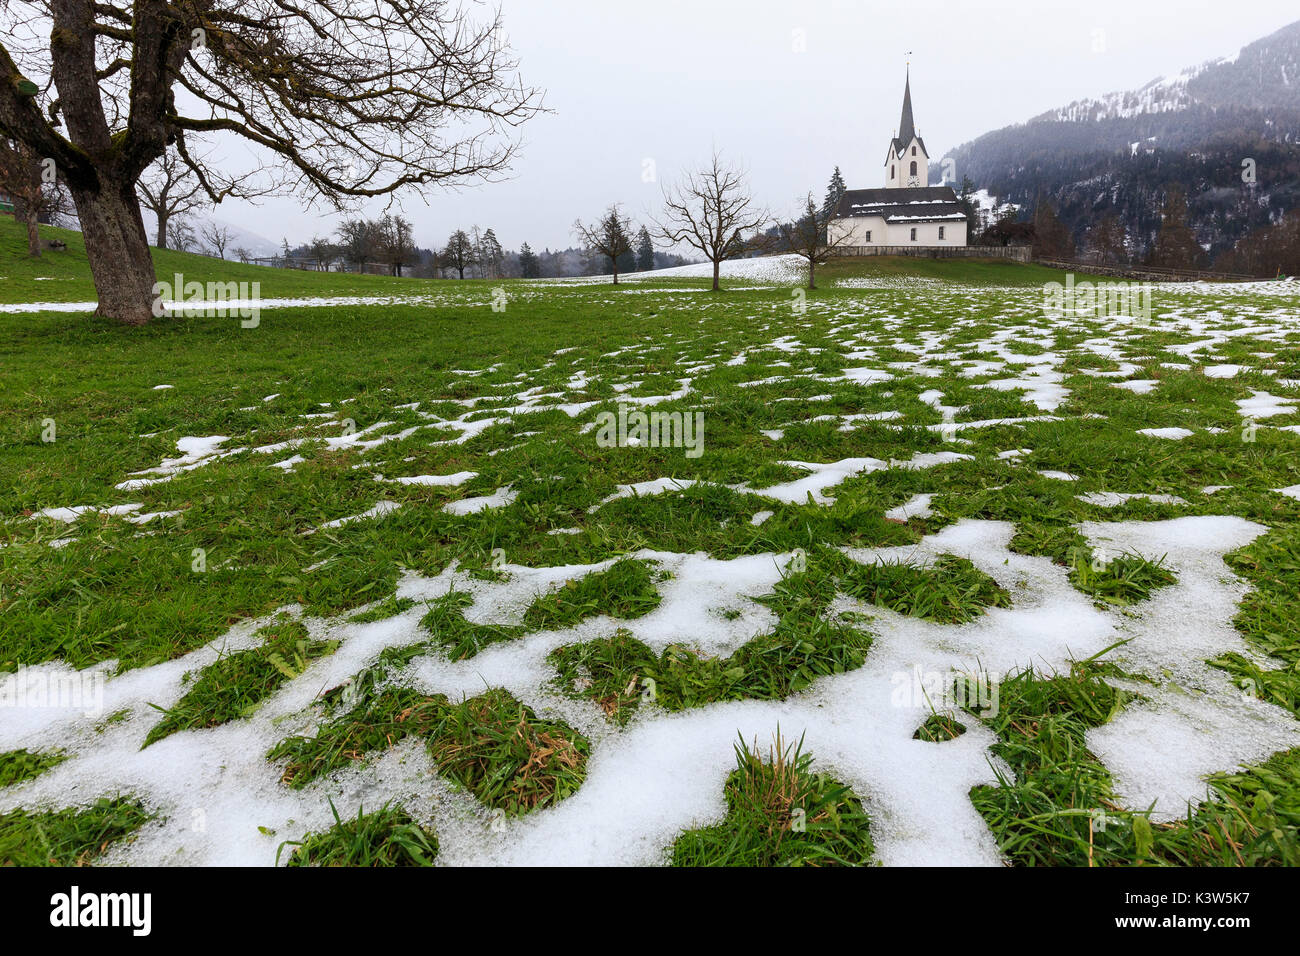 La fonte de la neige dans l'église du village. Versam, Safiental, Surselva, Grisons, Suisse, Europe Banque D'Images